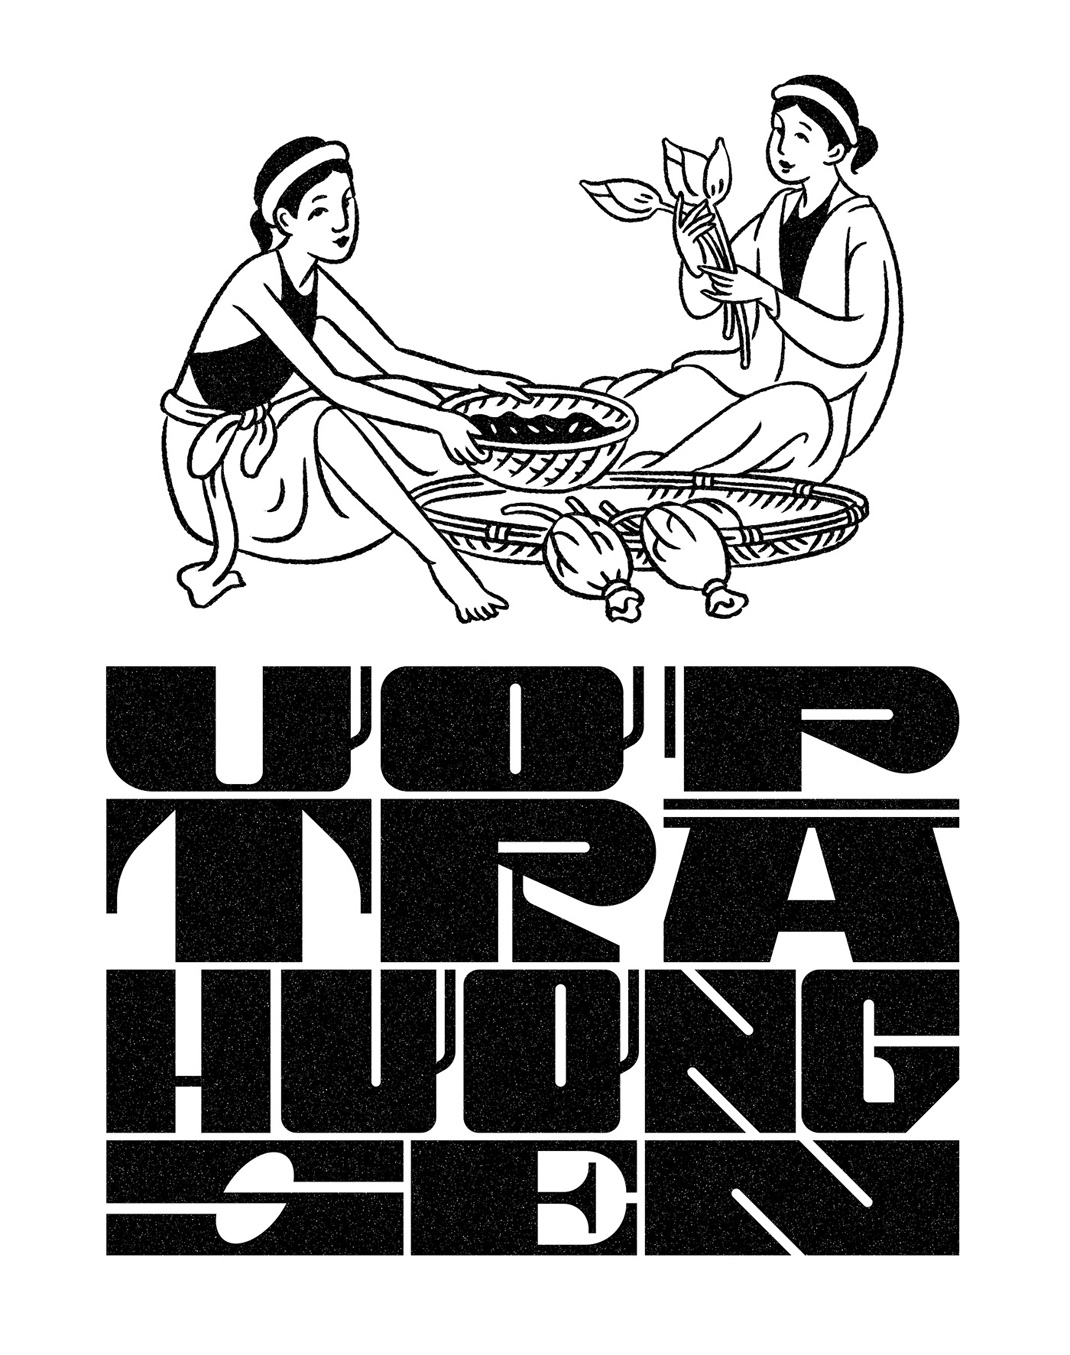 莲花茶Lotus Tea from Von Viet 越南 茶 包装设计 插画设计 传统 版画设计 logo设计 vi设计 空间设计